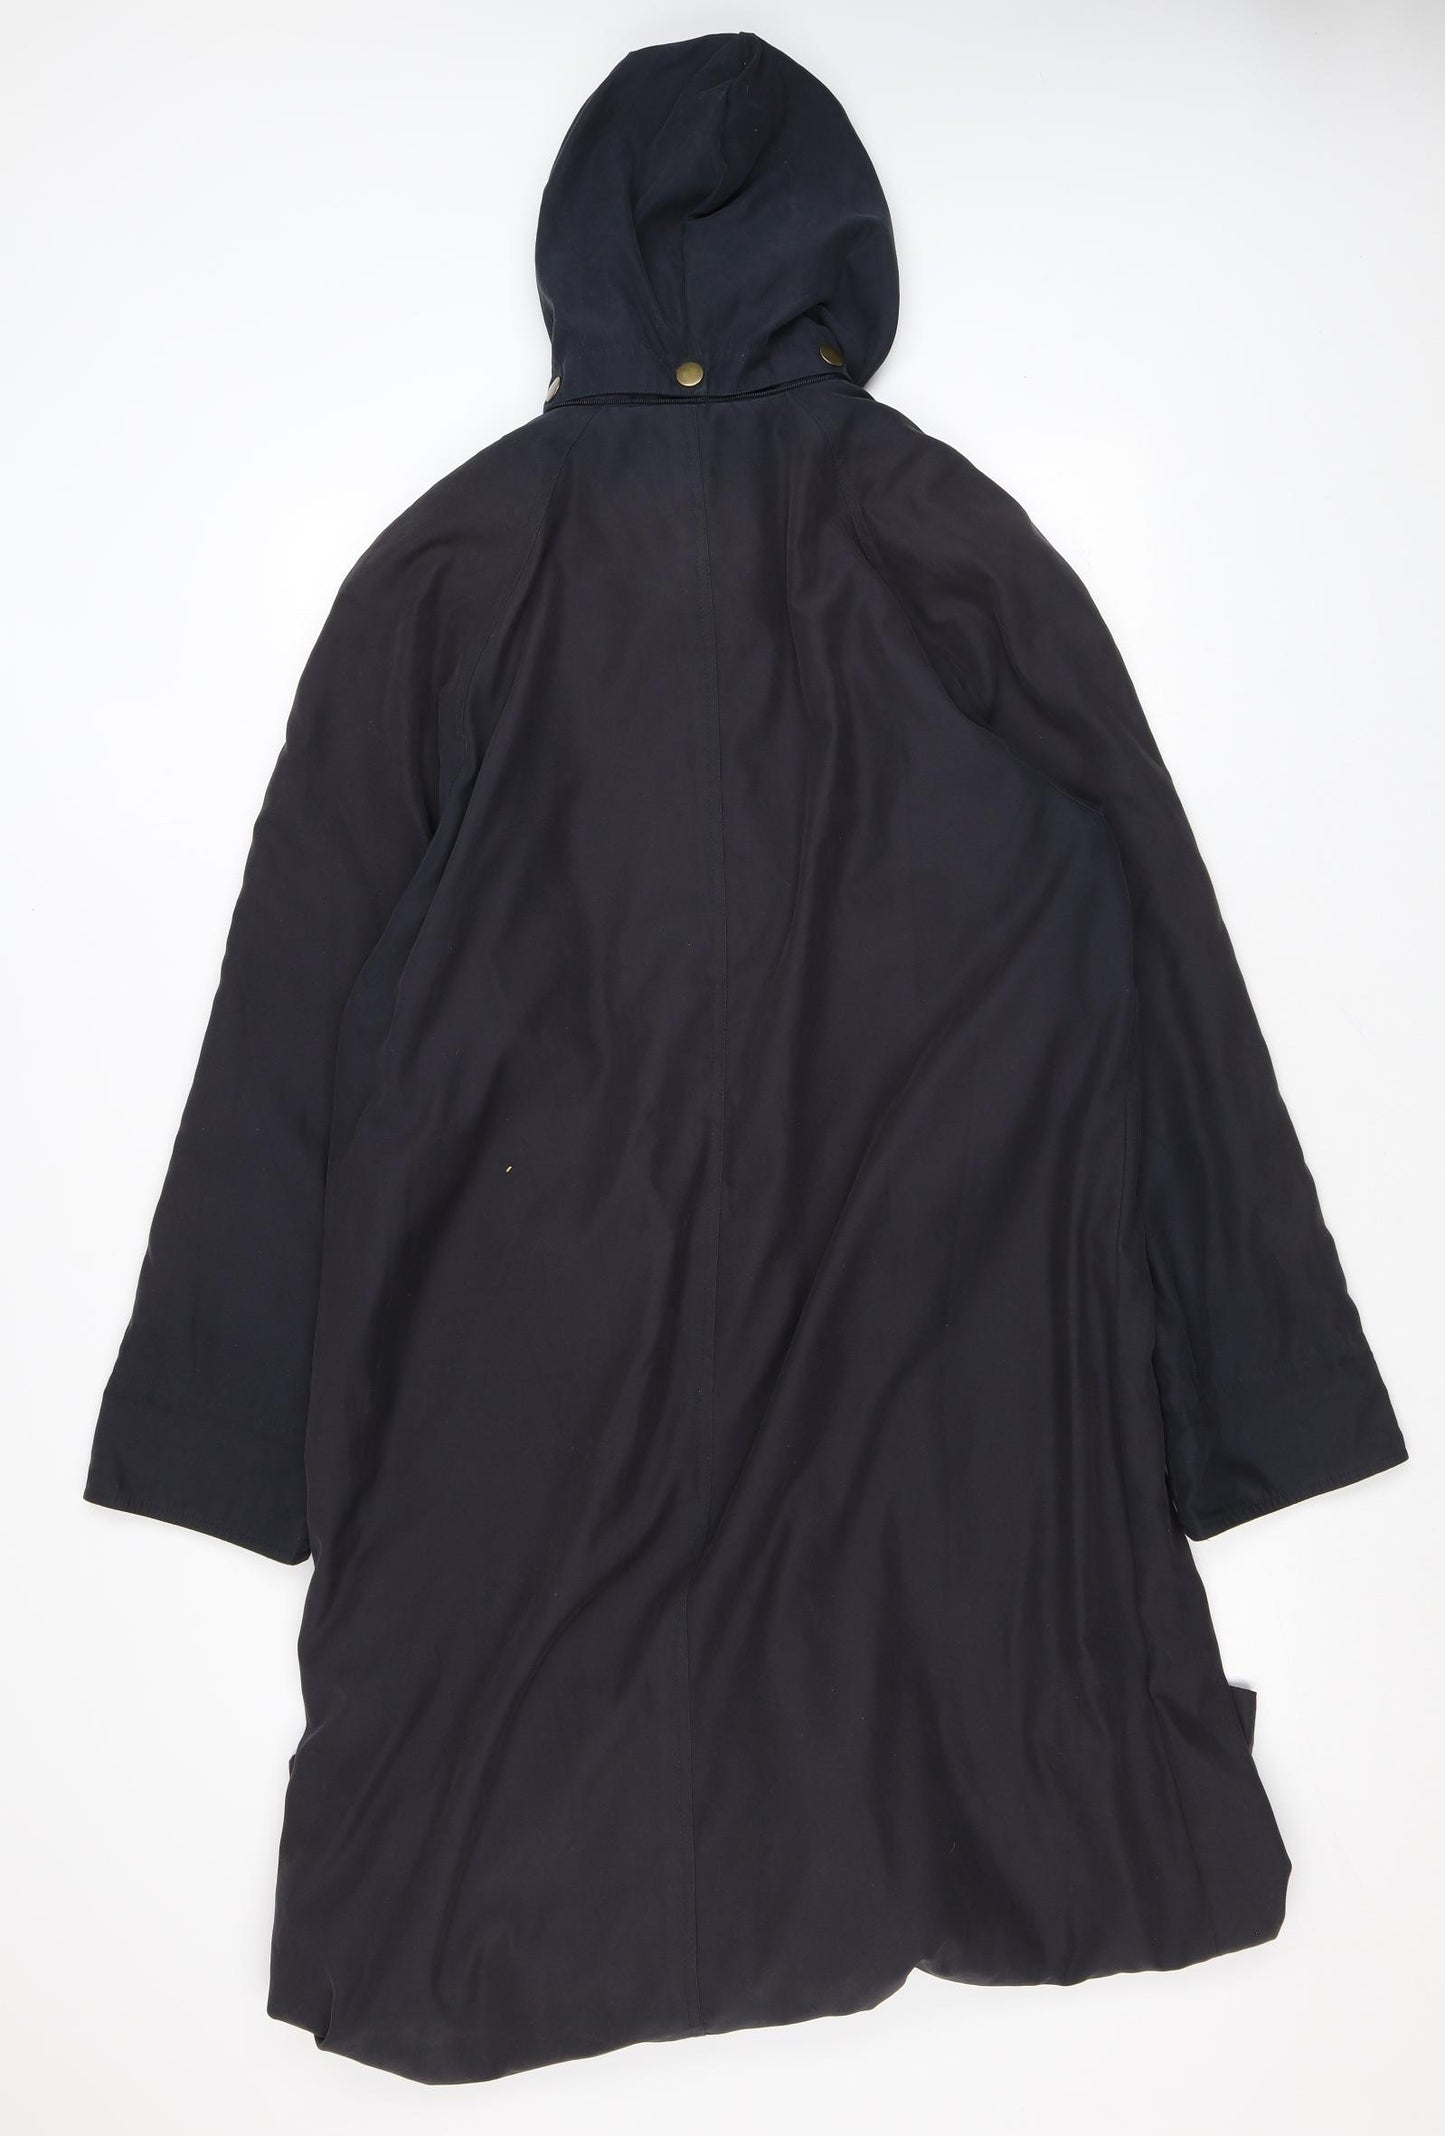 DANNIMAC Womens Blue Rain Coat Coat Size M Button